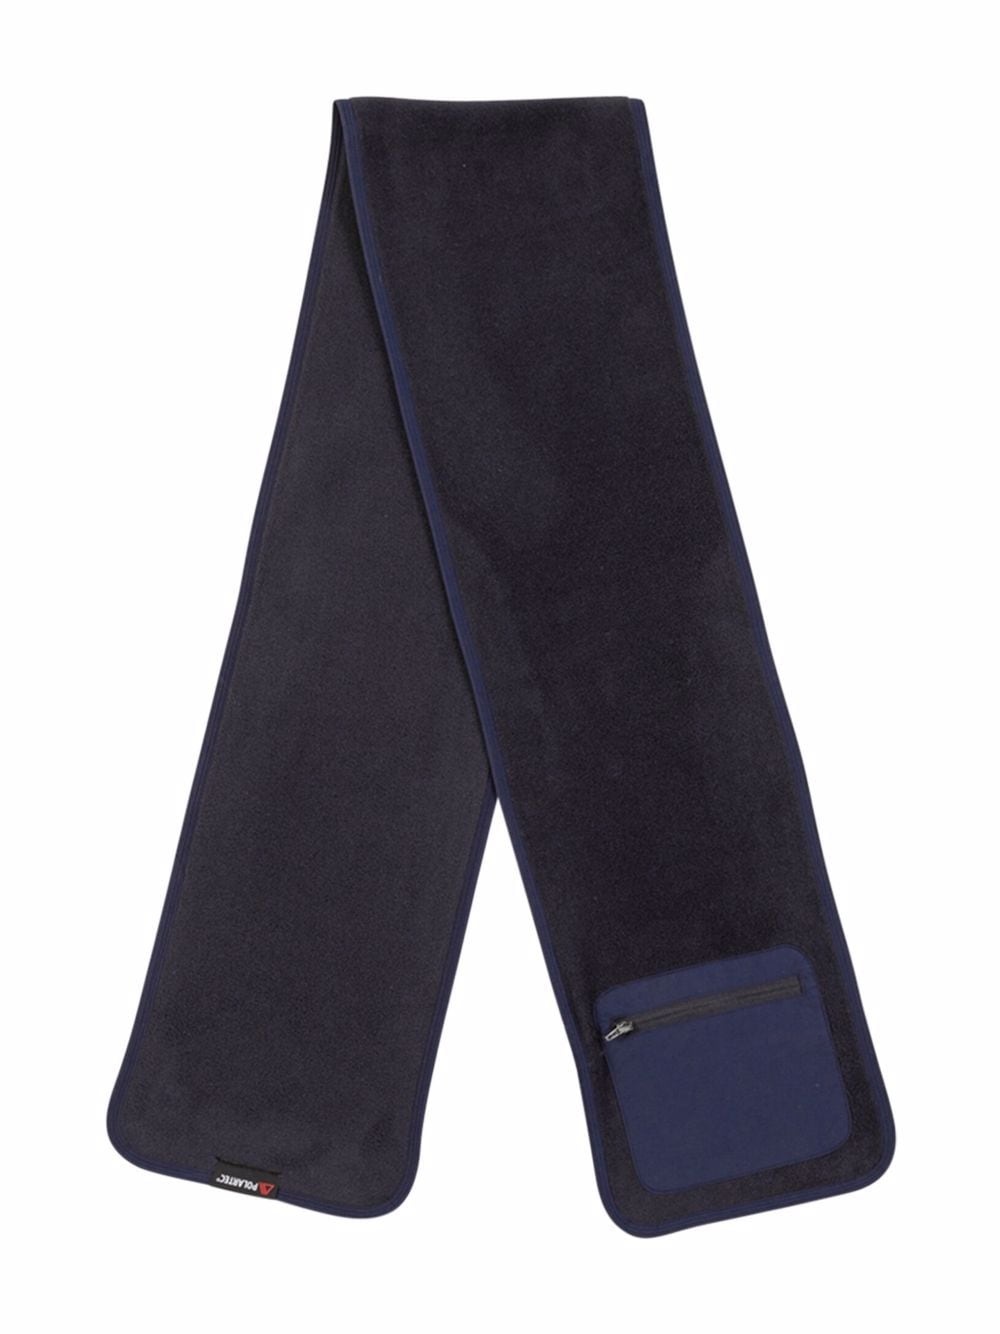 x Polartec pocket scarf "FW21" - 2